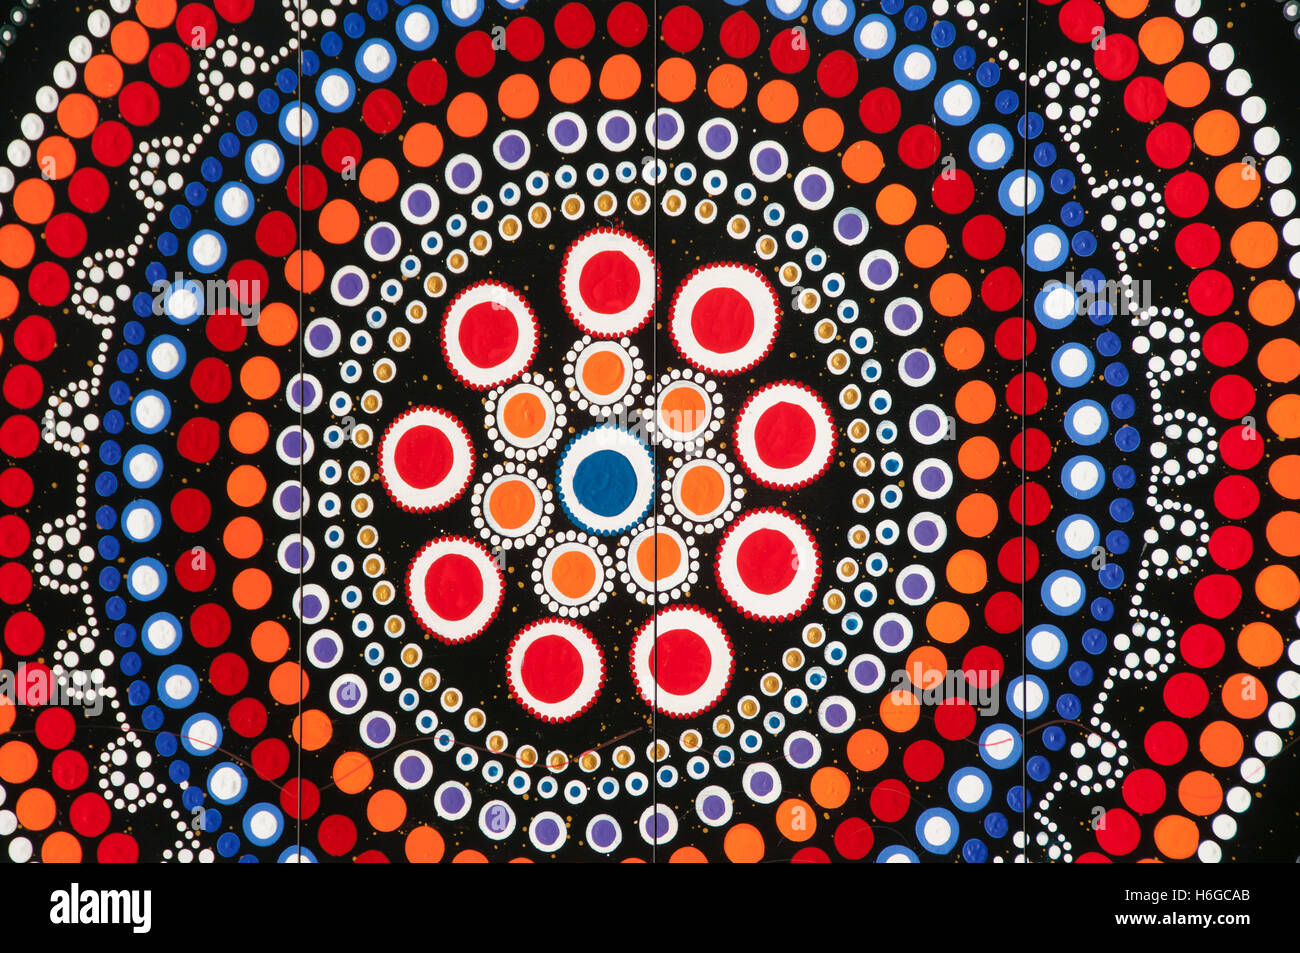 L'art autochtone - Australie Banque D'Images